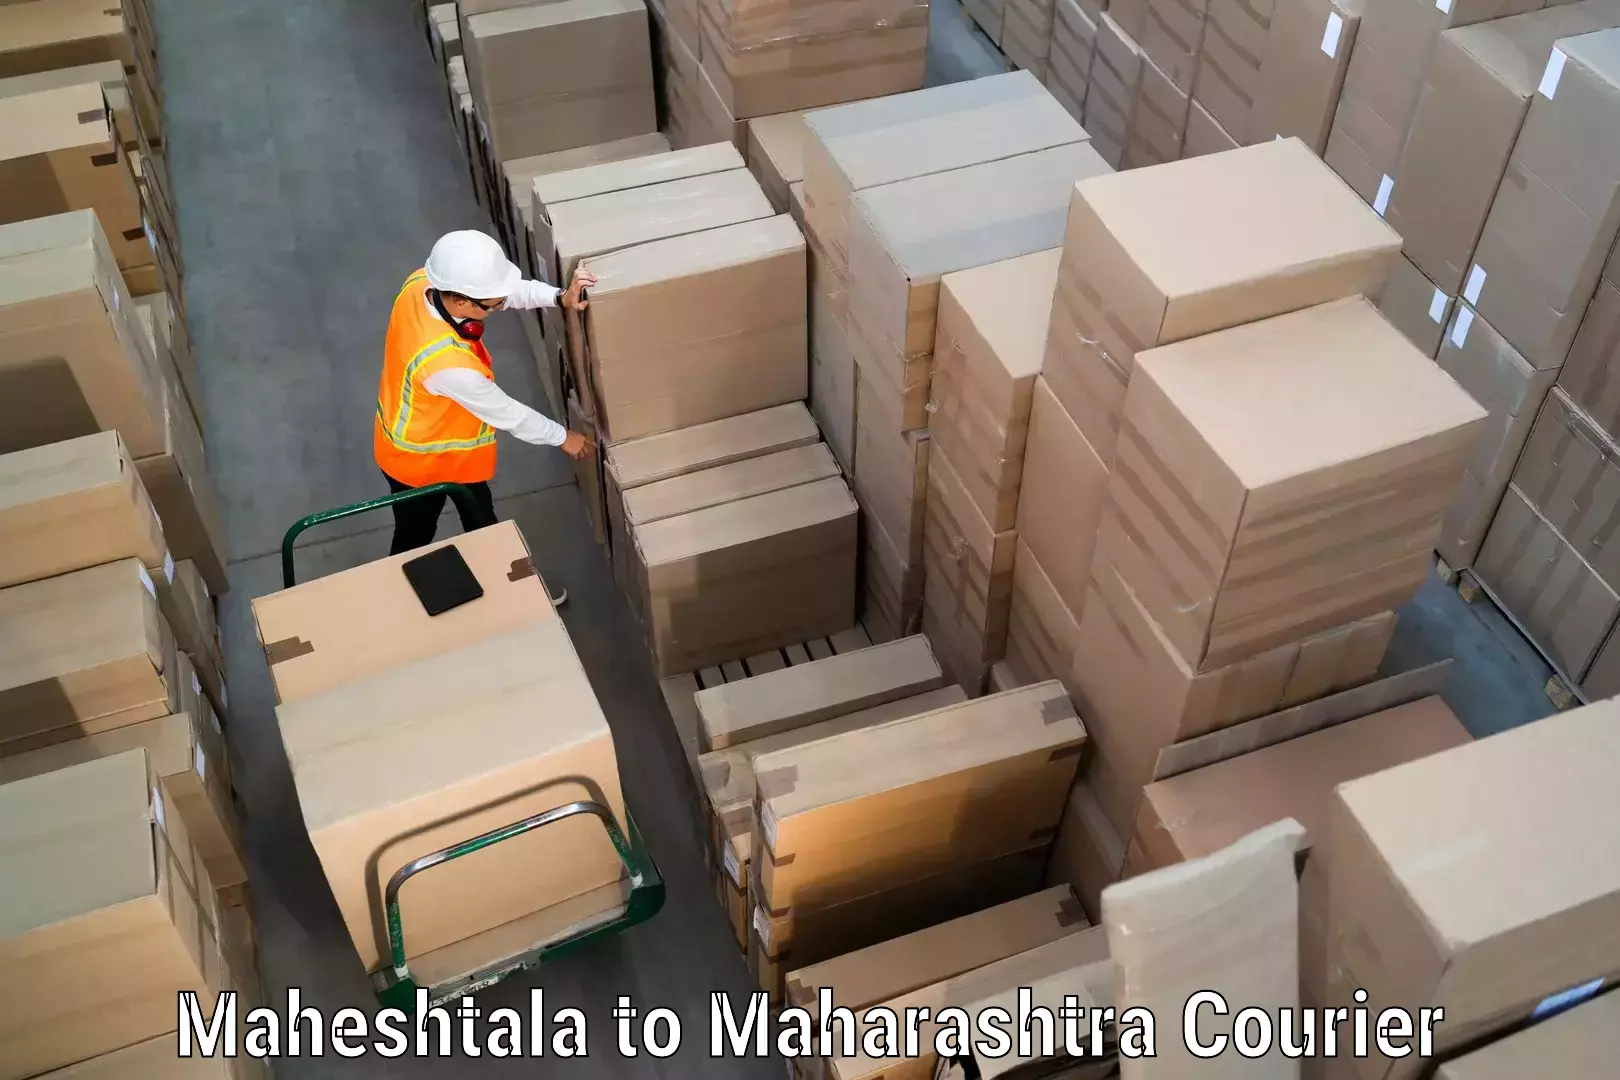 Round-the-clock parcel delivery Maheshtala to Navi Mumbai